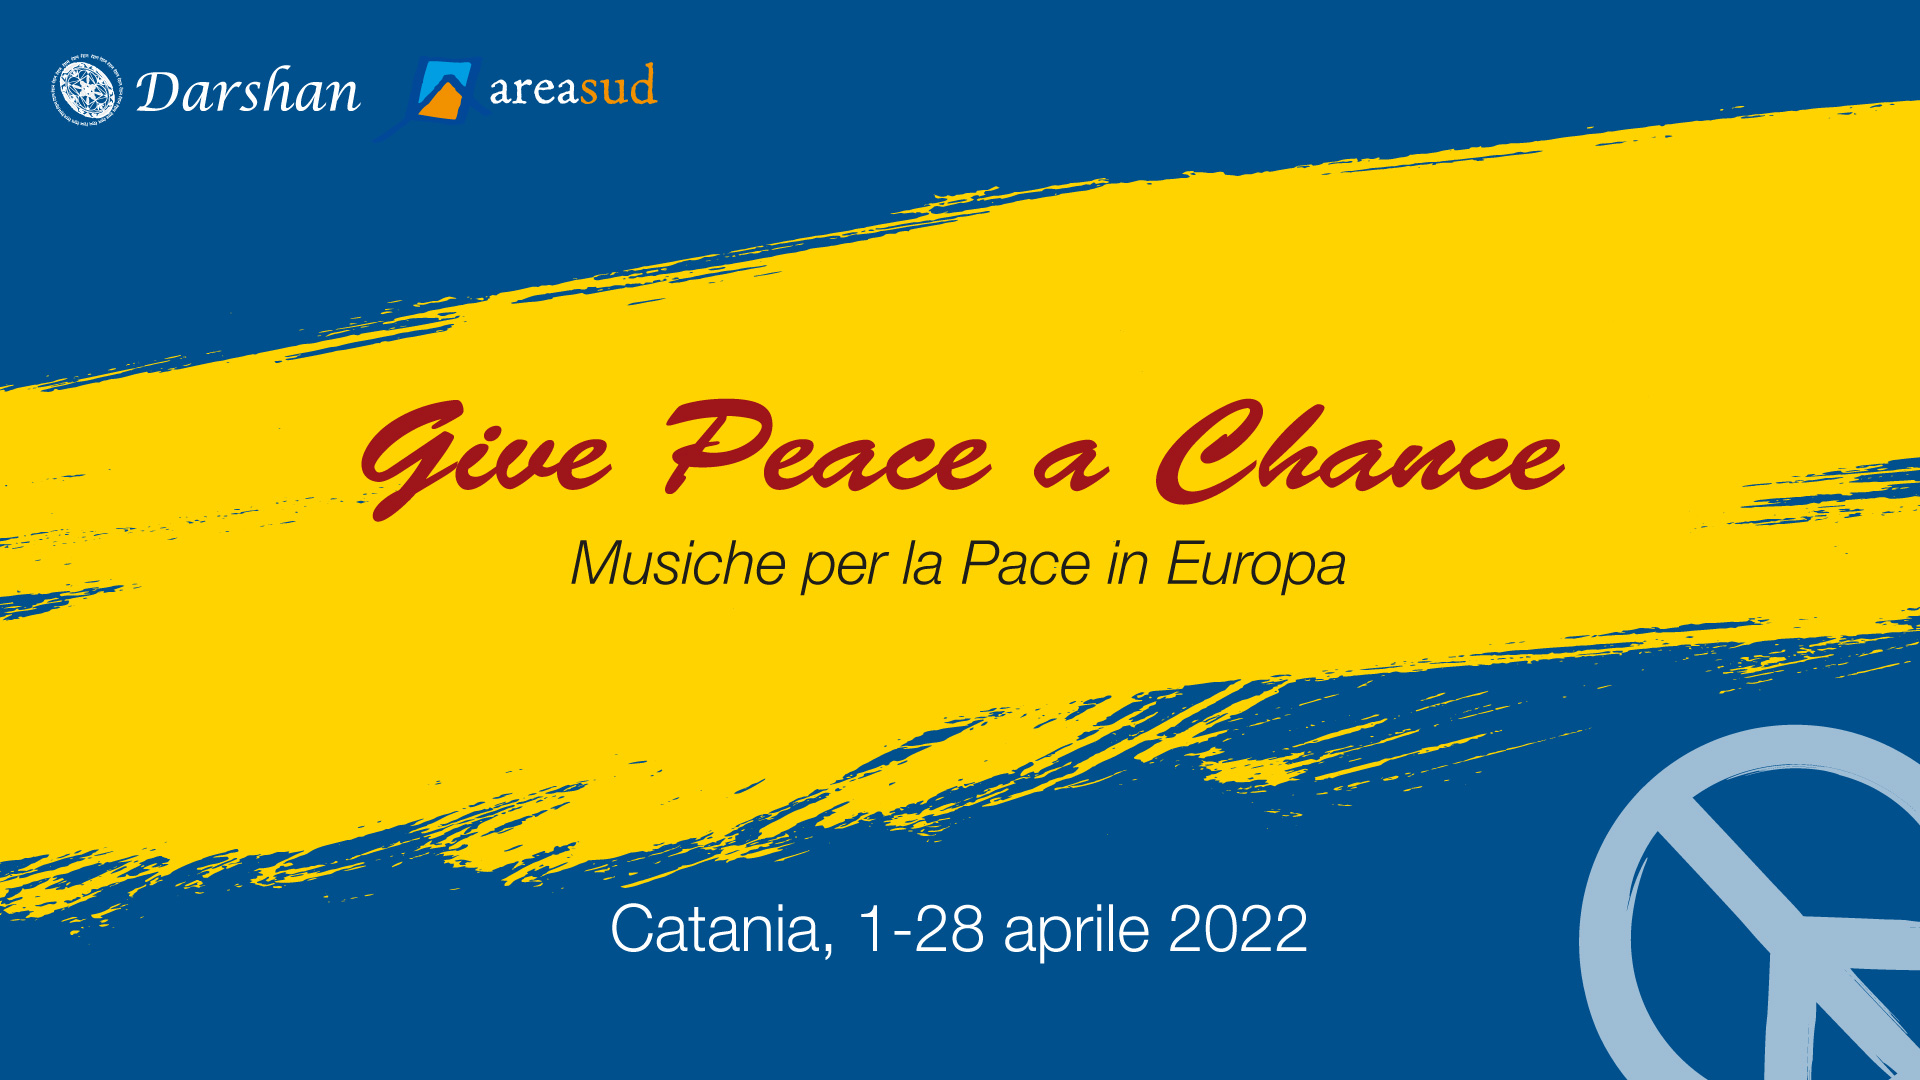 1/28 apr – GIVE PEACE A CHANCE, Musiche per la Pace in Europa